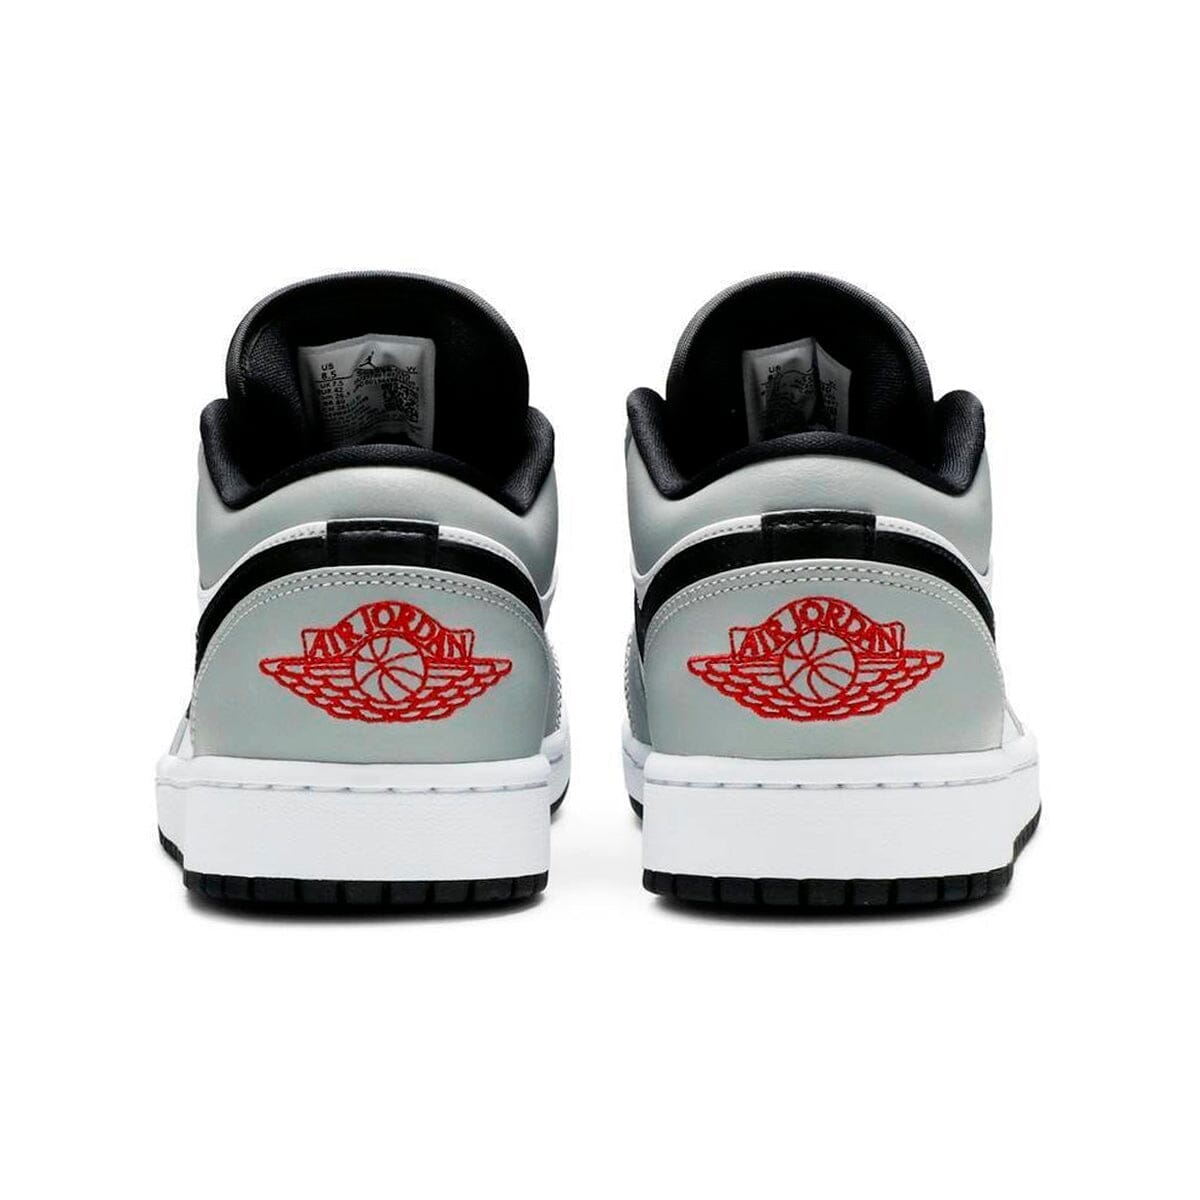 Air Jordan 1 Low Light Smoke Grey Air Jordan 1 Low Blizz Sneakers 